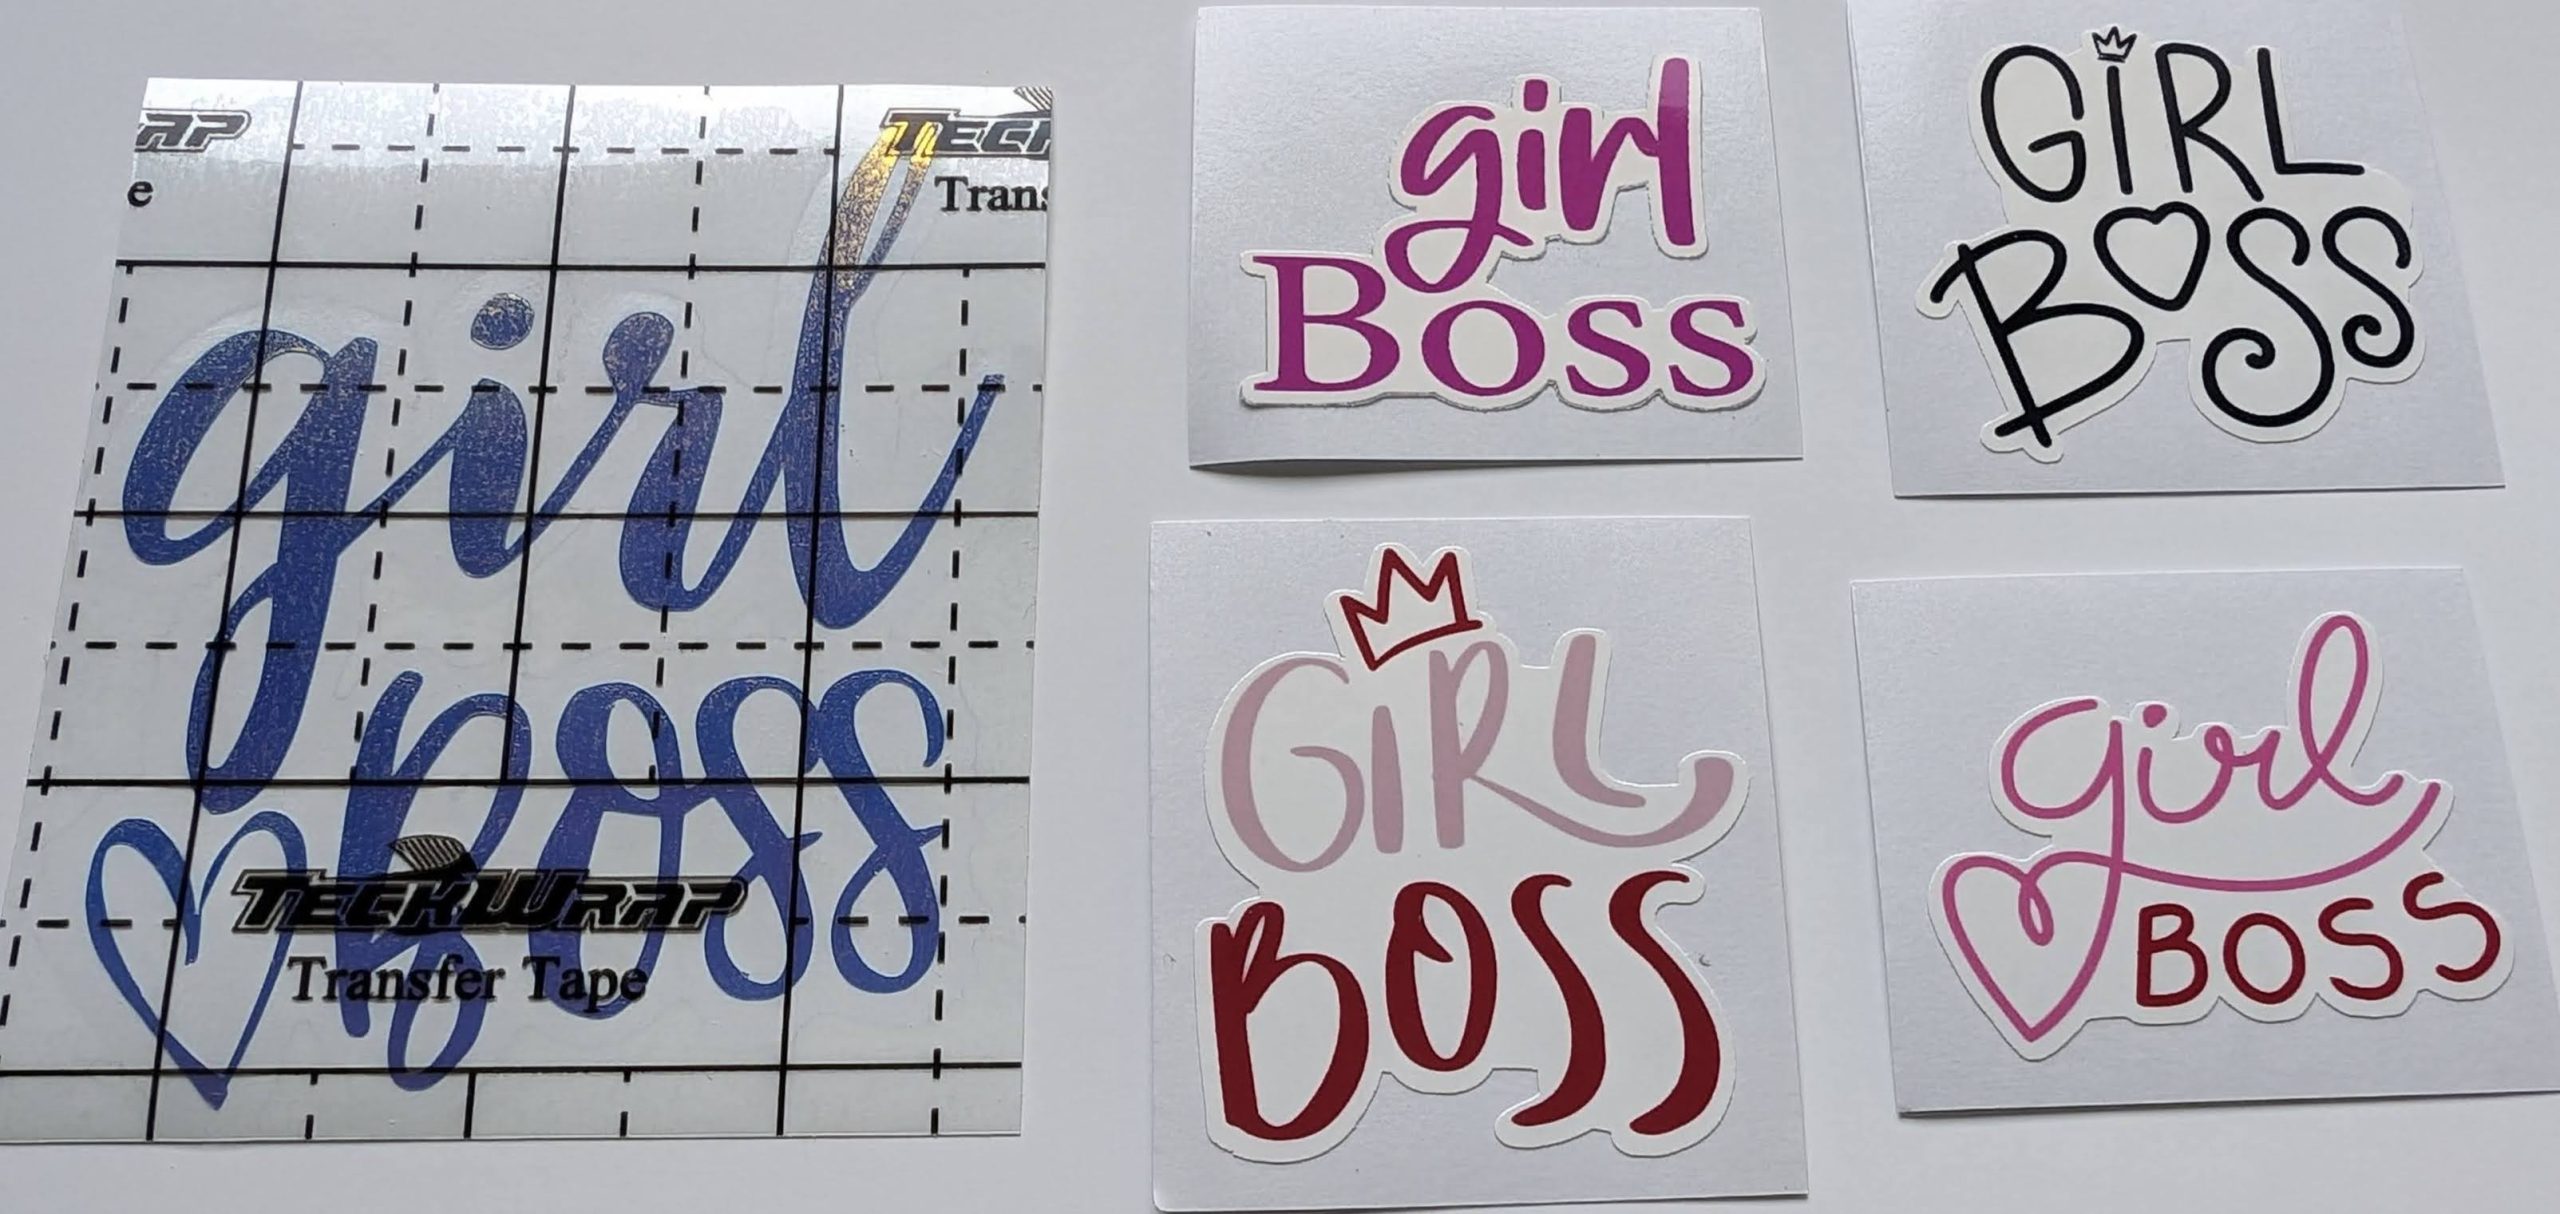 Girl Boss example of vinyl versus stickers